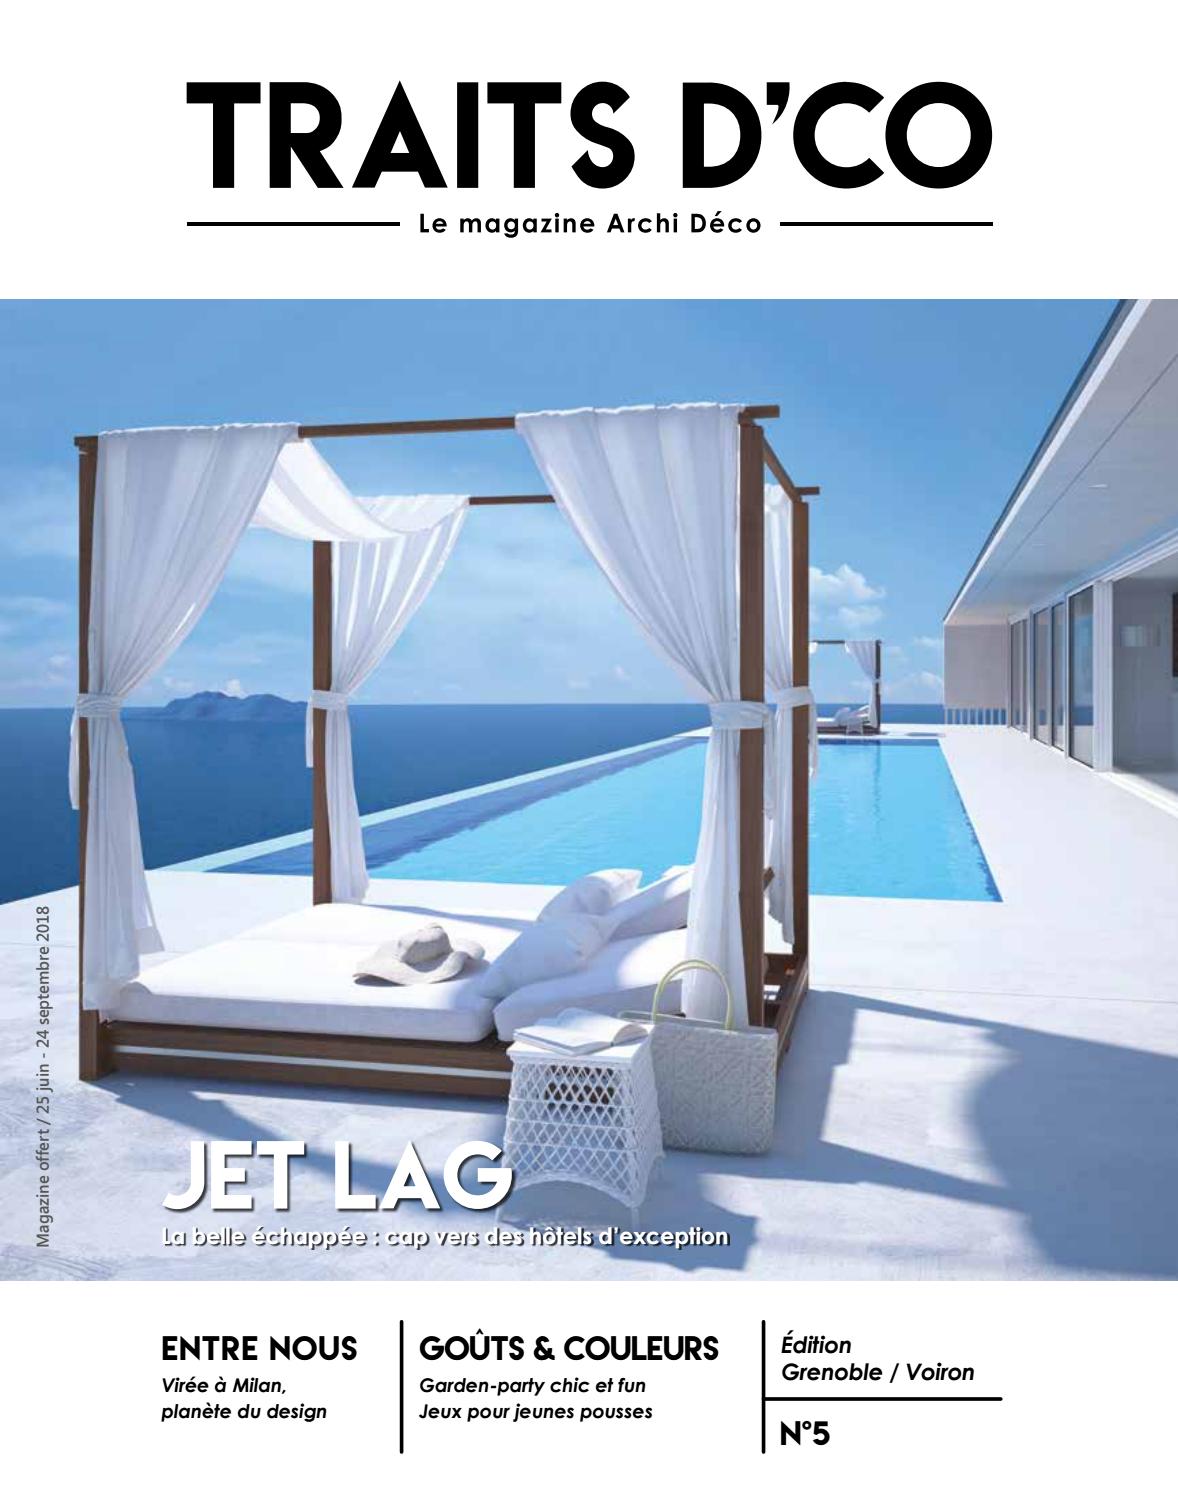 Salon De Jardin Vert Anis Génial Traits D Co Magazine Grenoble Voiron N5 Juin 2018 by